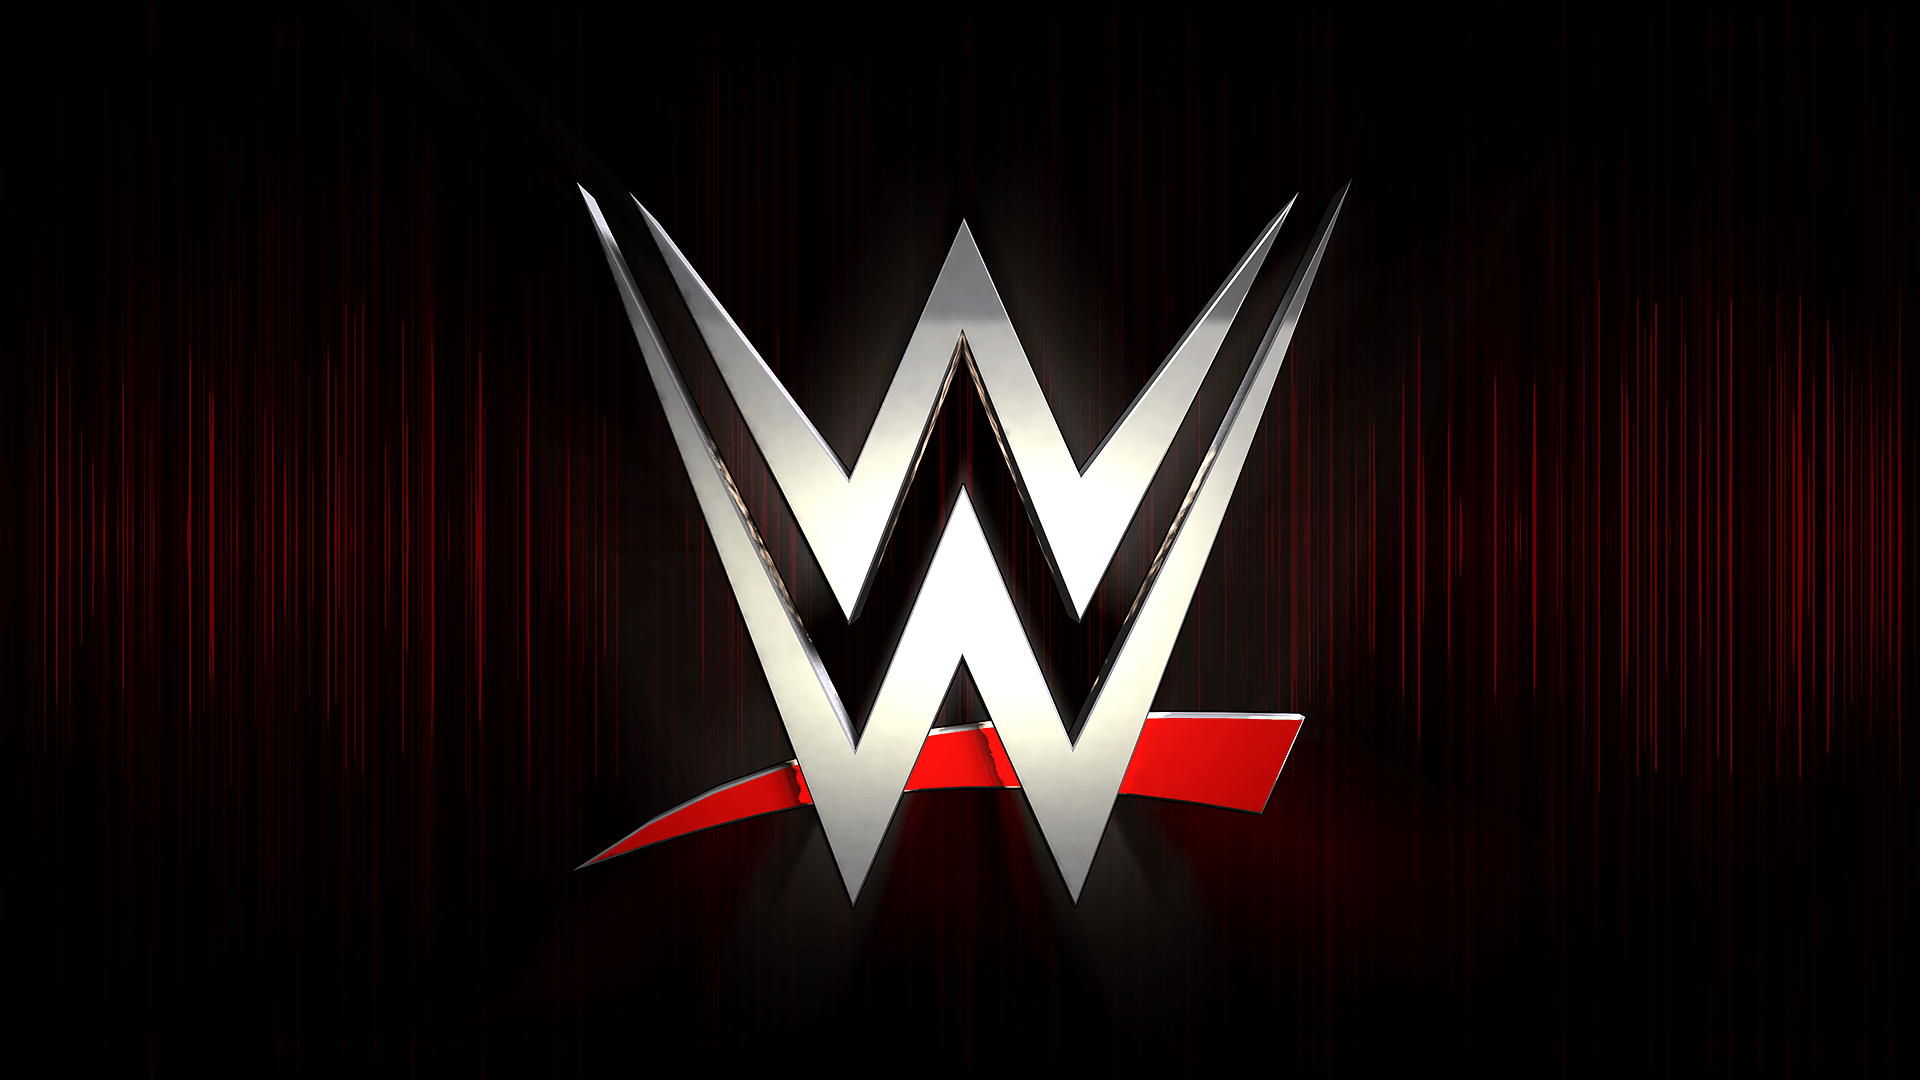 new WWE logo wallpaper. Wwe logo, Wwe wallpaper, Wwe